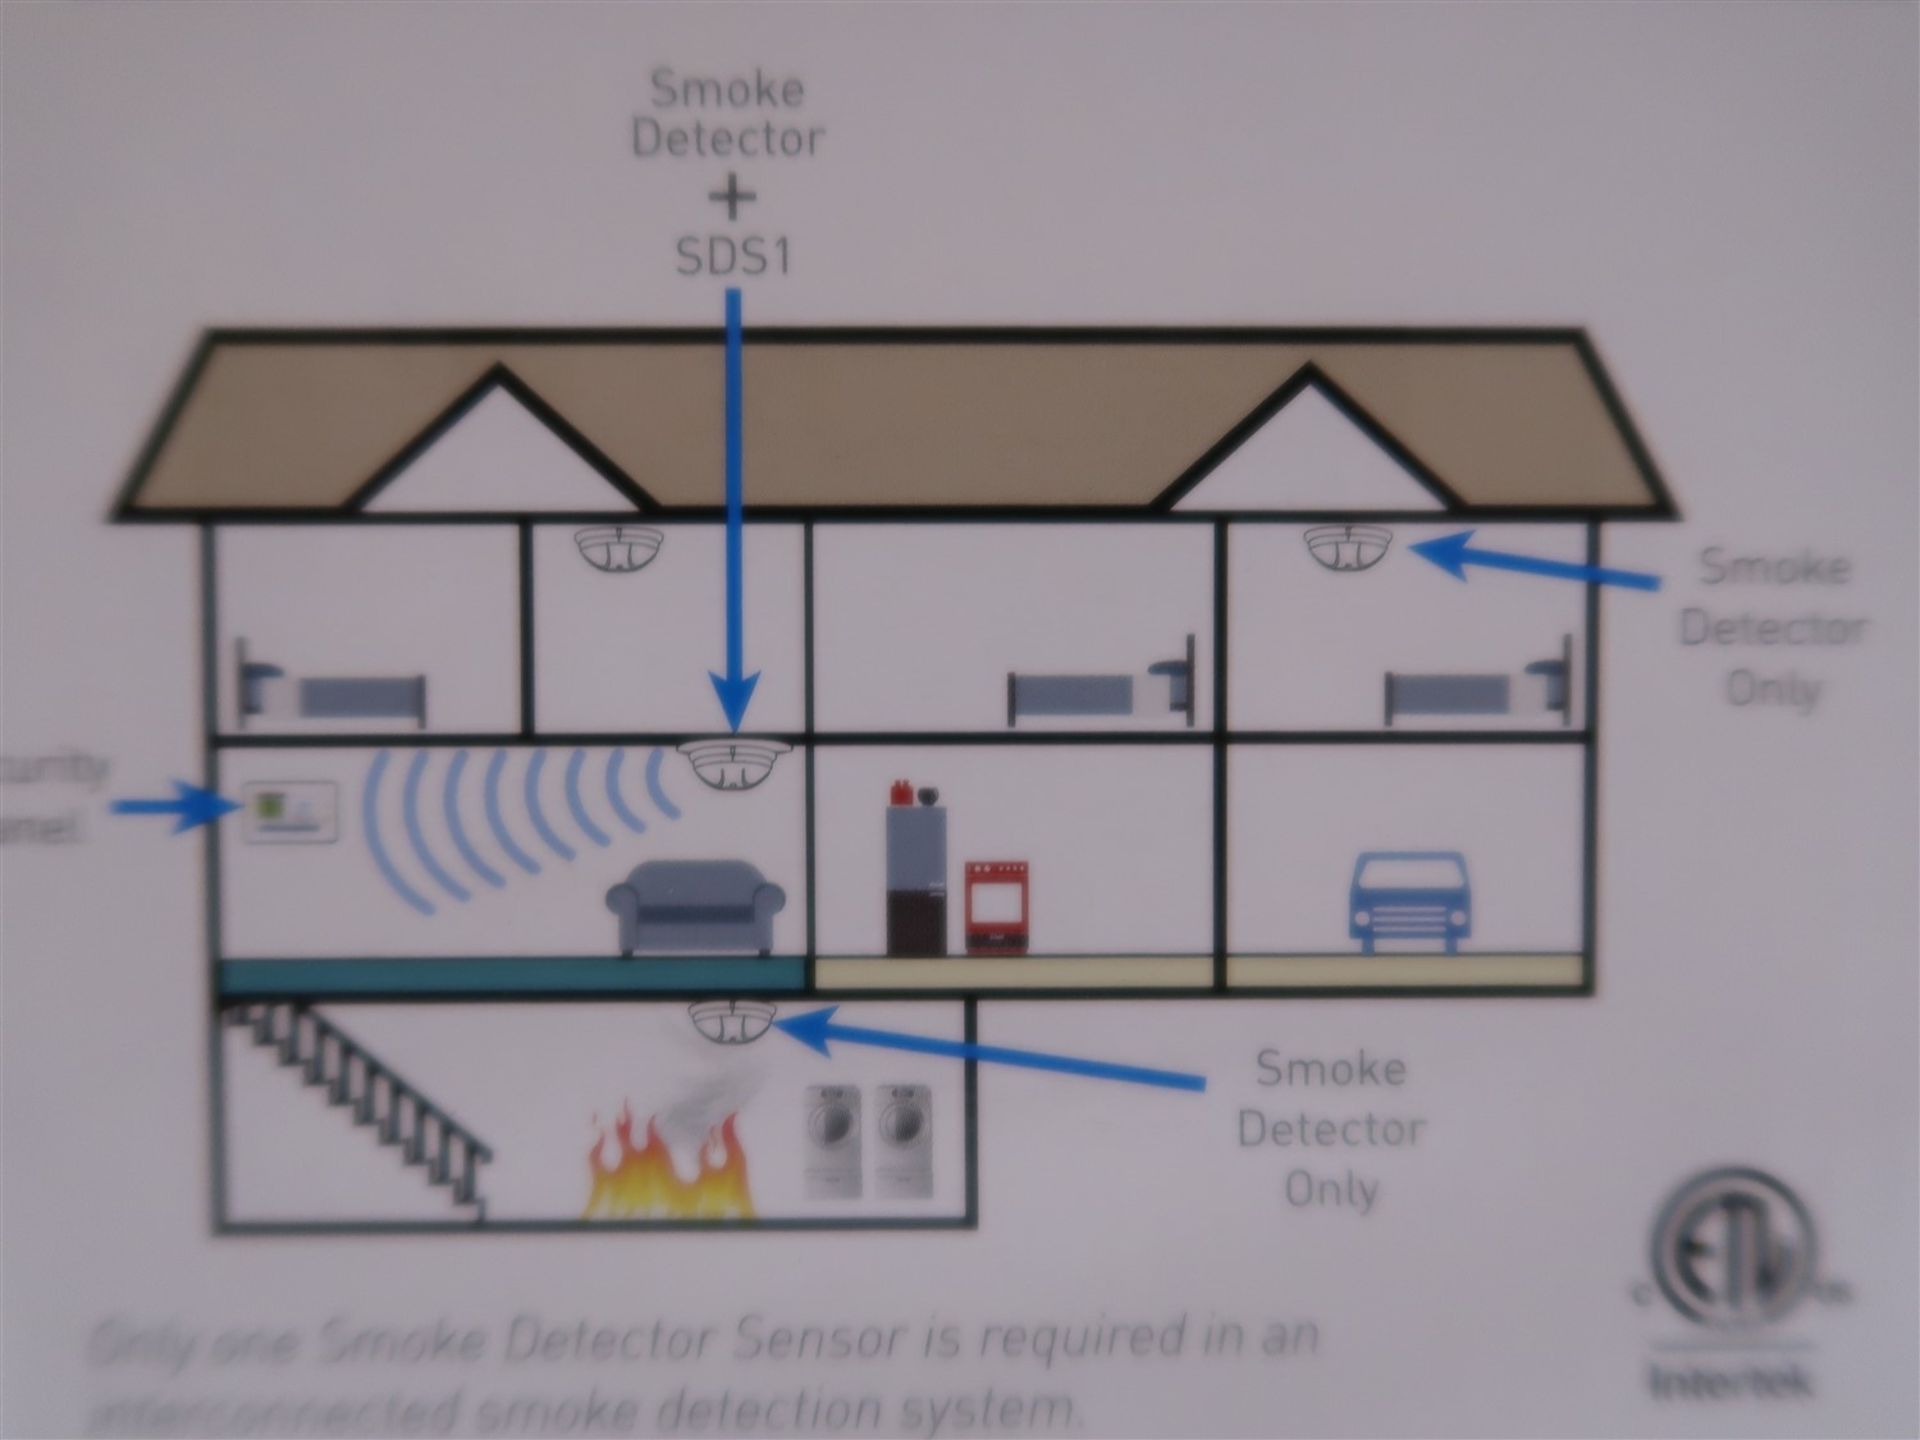 2 GIG SMOKE DETECTOR SENSOR SDS1-345 (BNIB) - Image 3 of 3